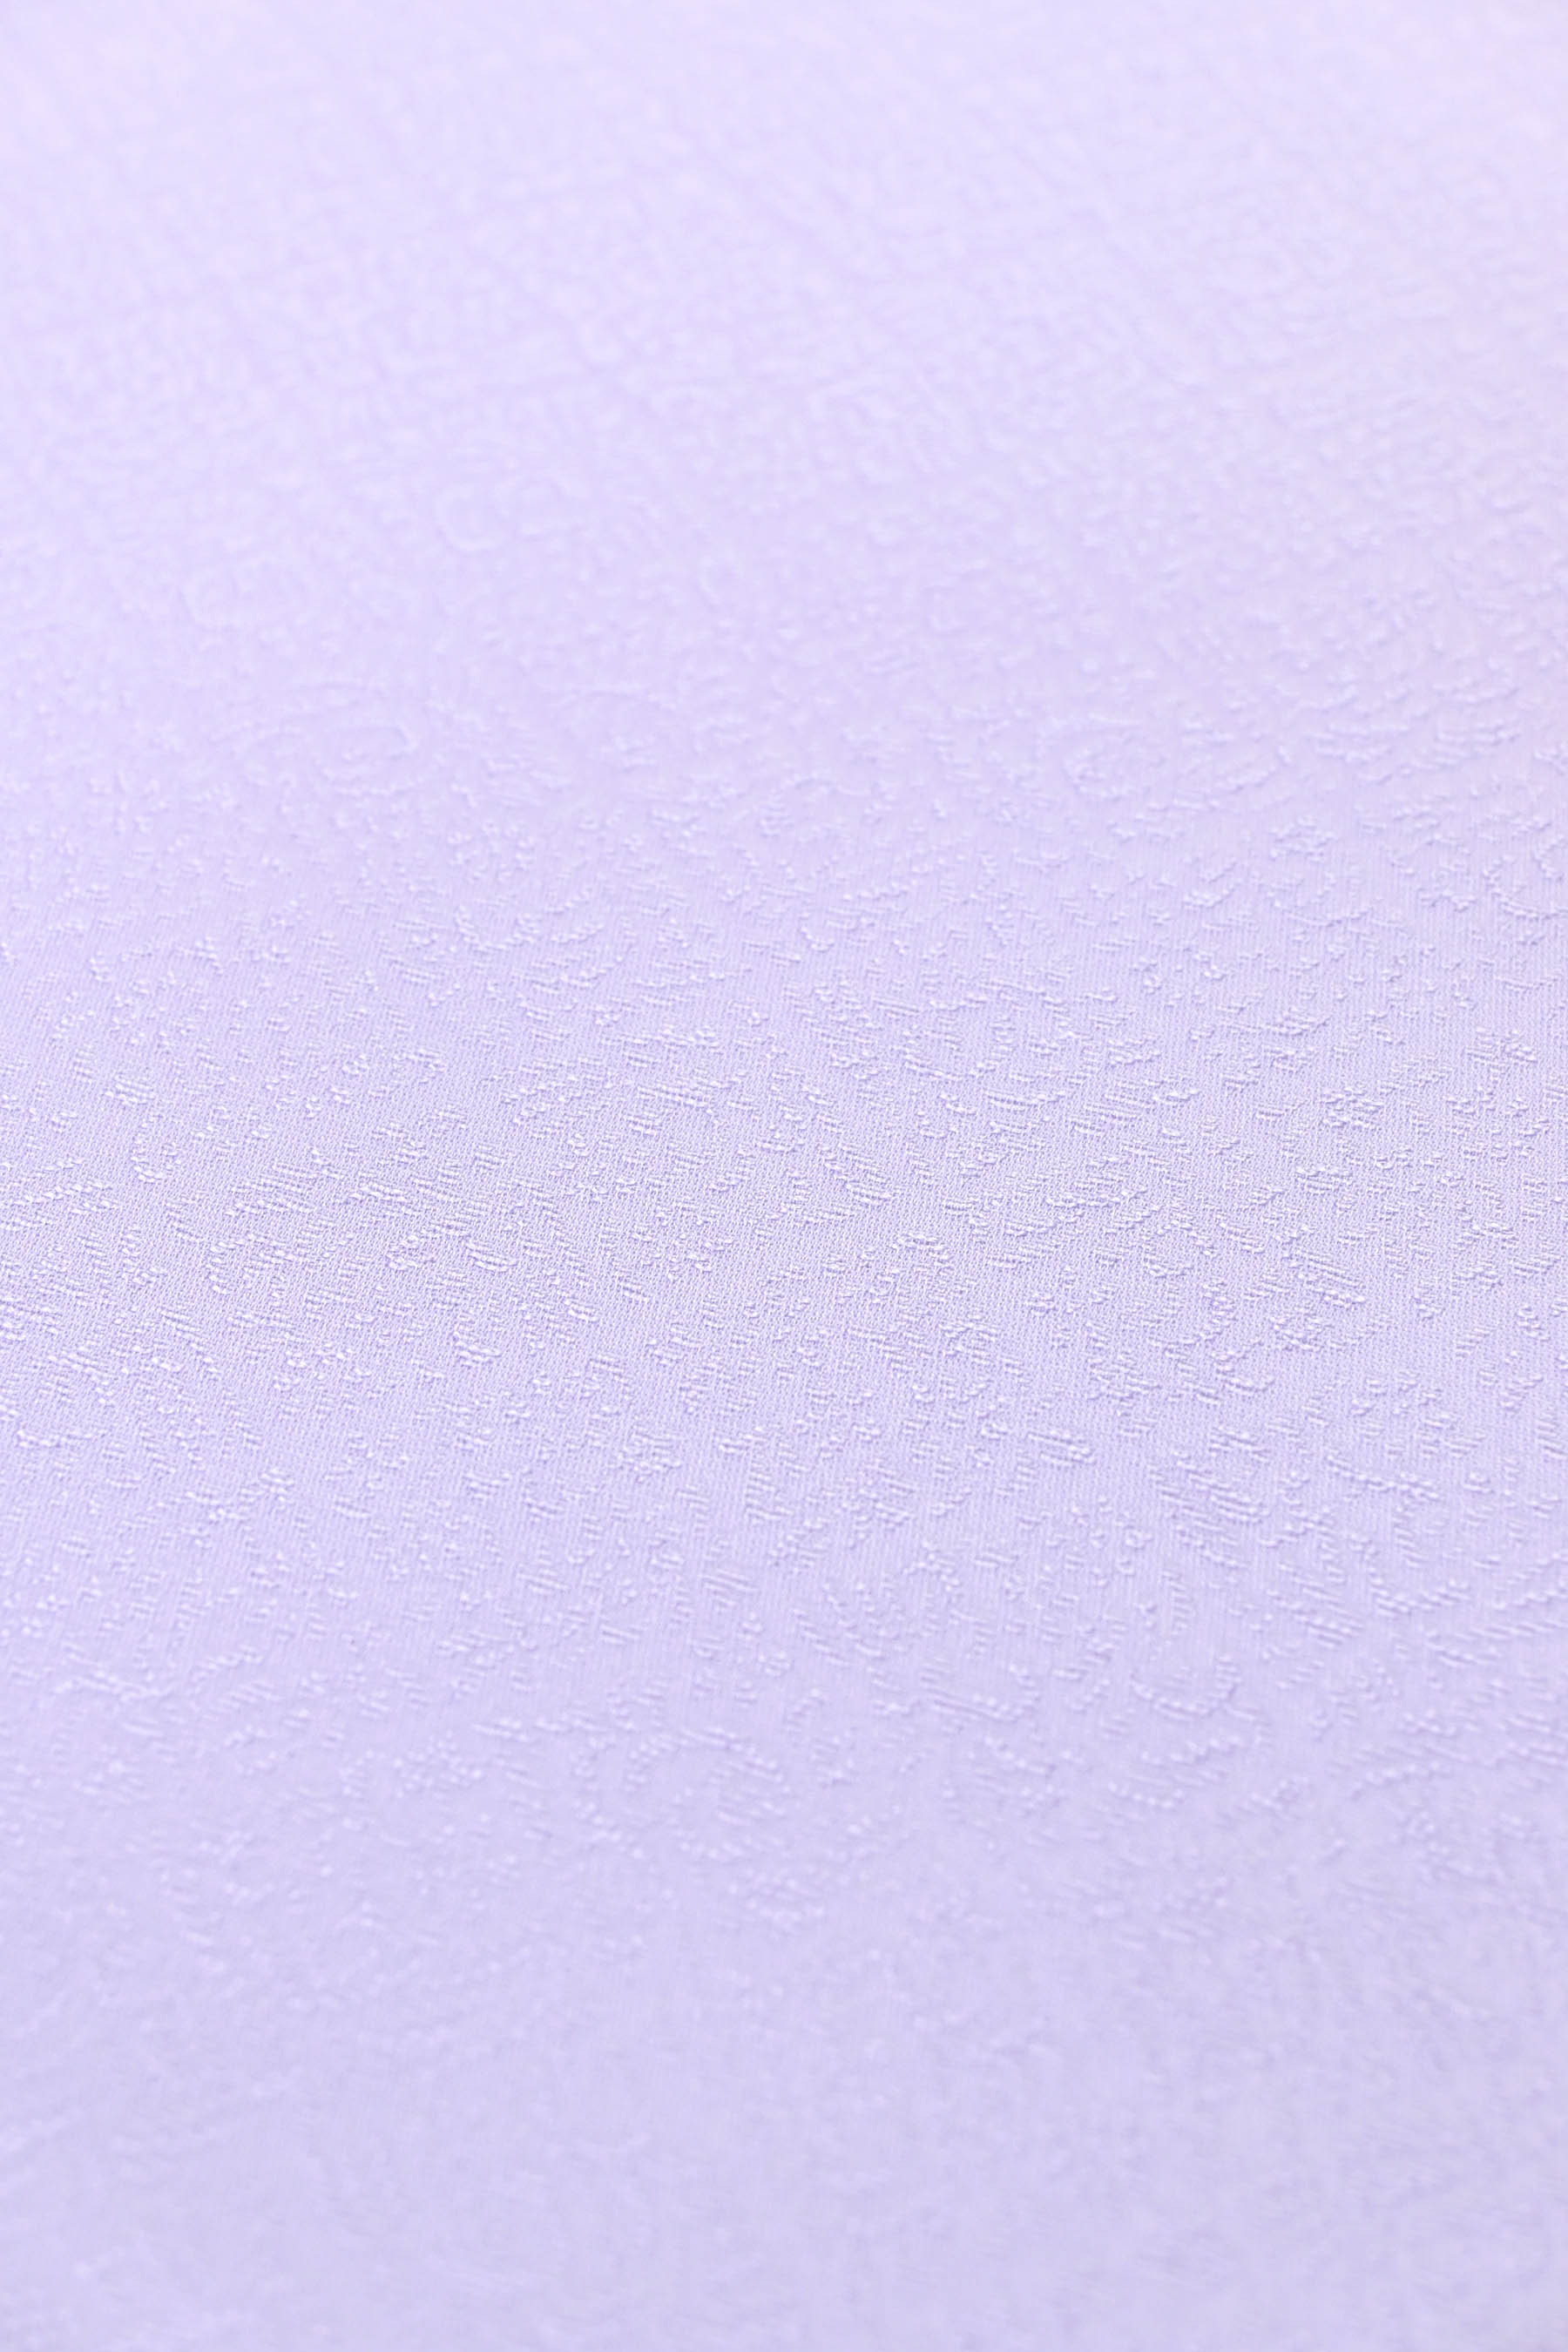 日本最大の 特選暈し染刺繍付下げ着尺 麗華菱花文 薄紫色 凛と清雅な刺繍 美しいグラデーション… 